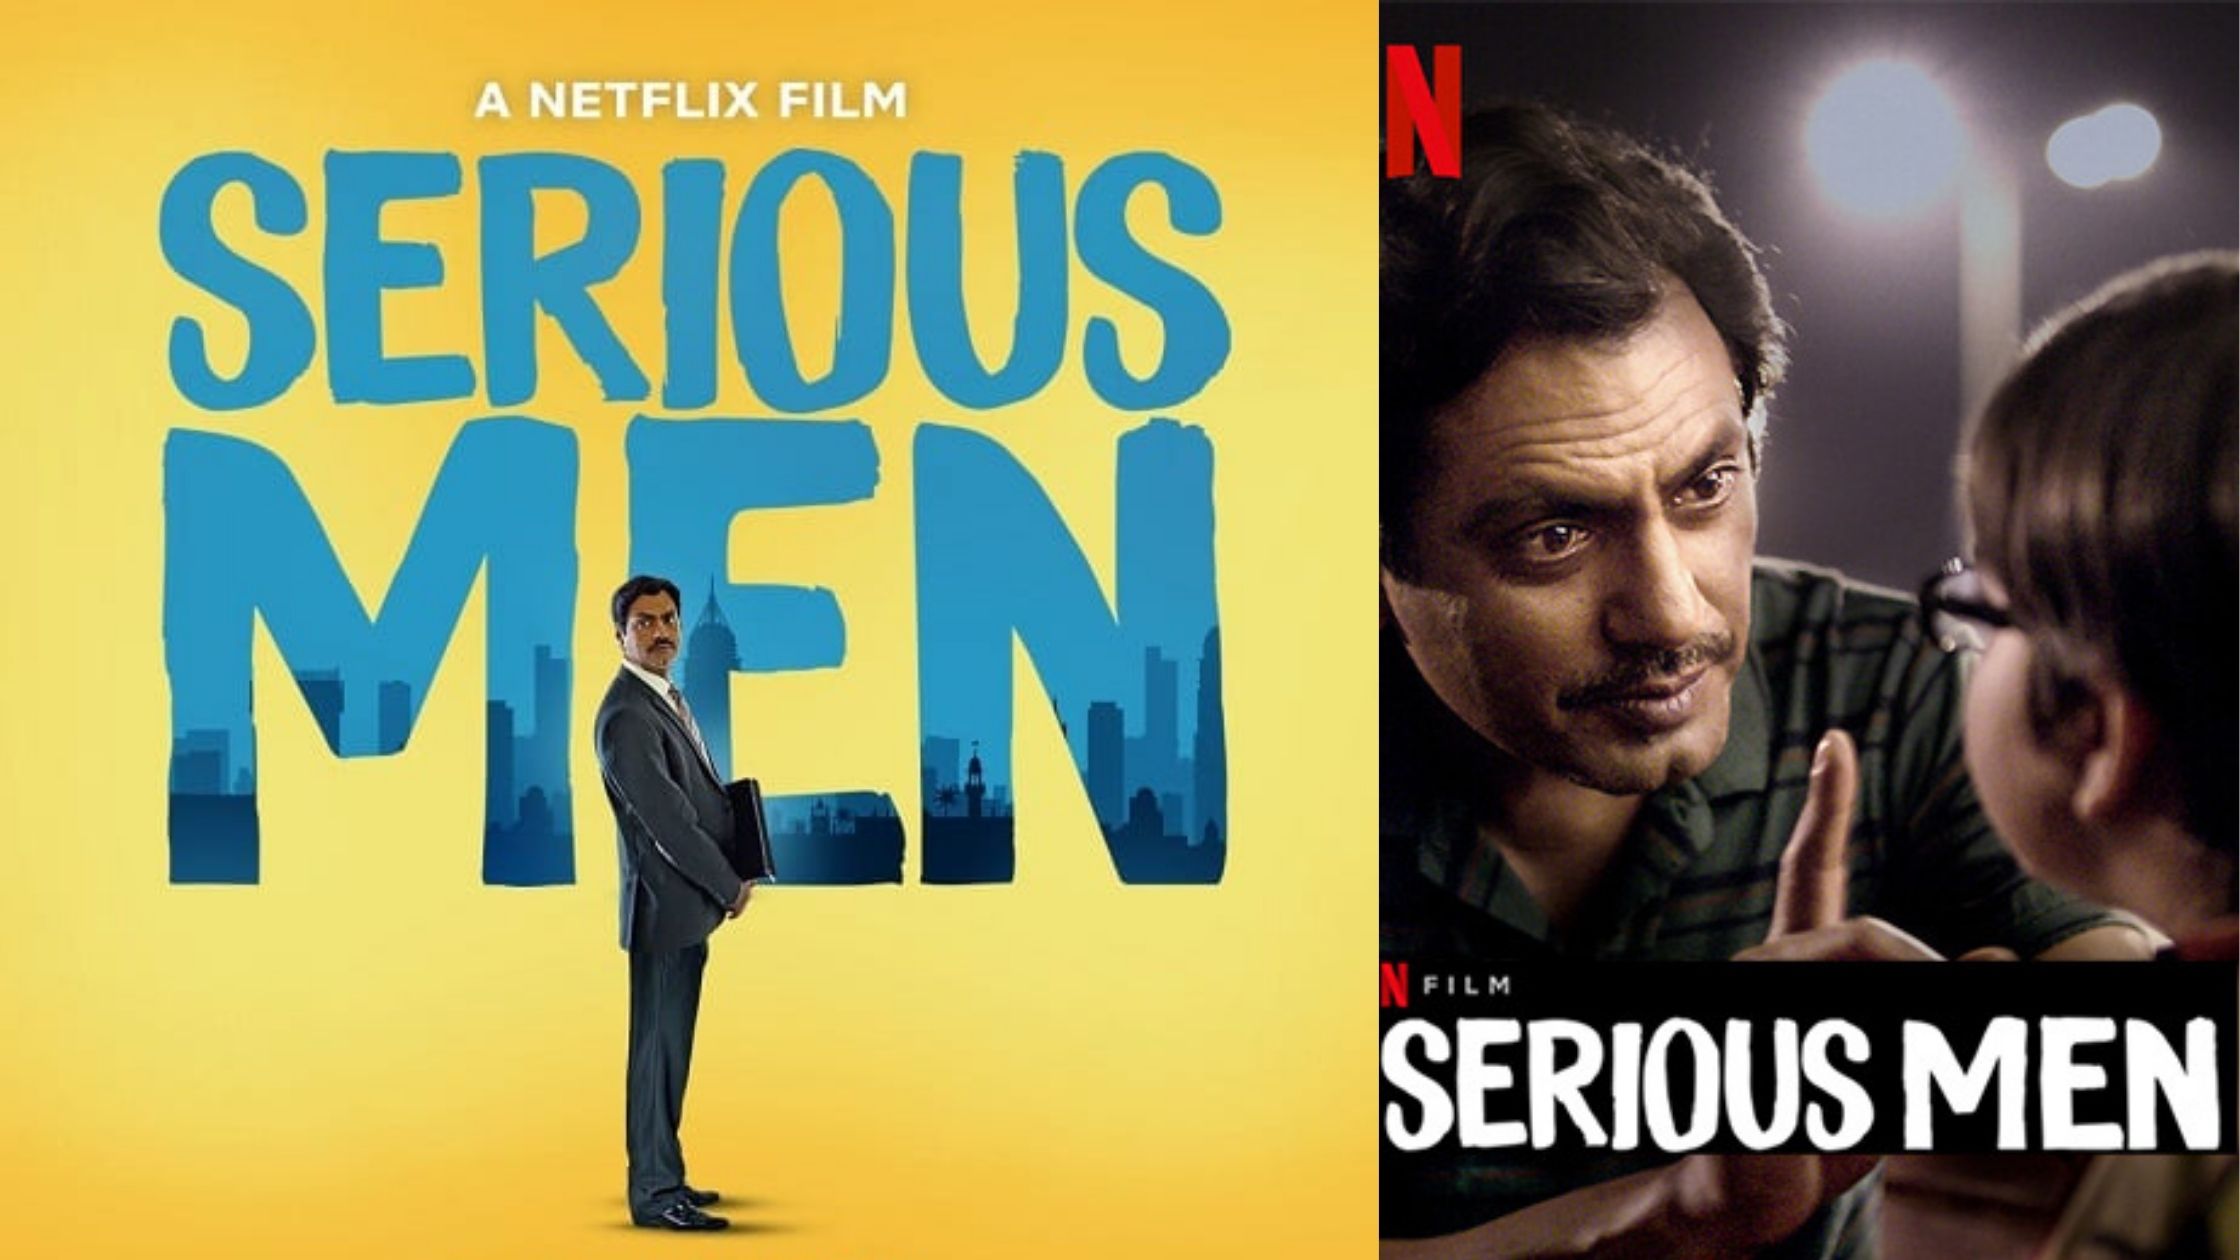 Netflix Serious Men Review